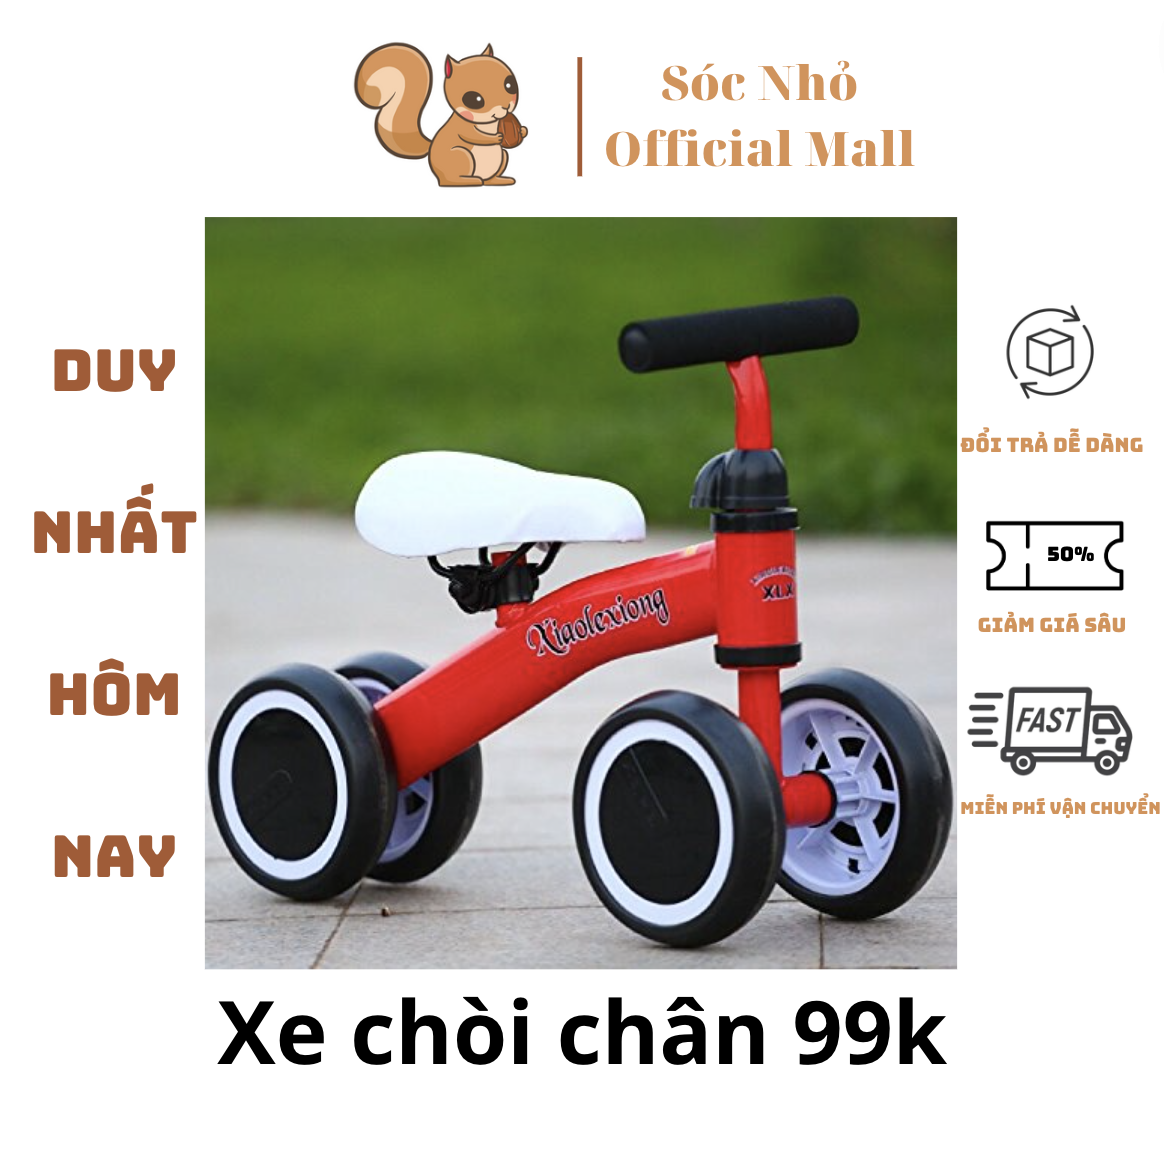 Xe chòi chân thăng bằng Xiaolong - Hàng cao cấp 4.4